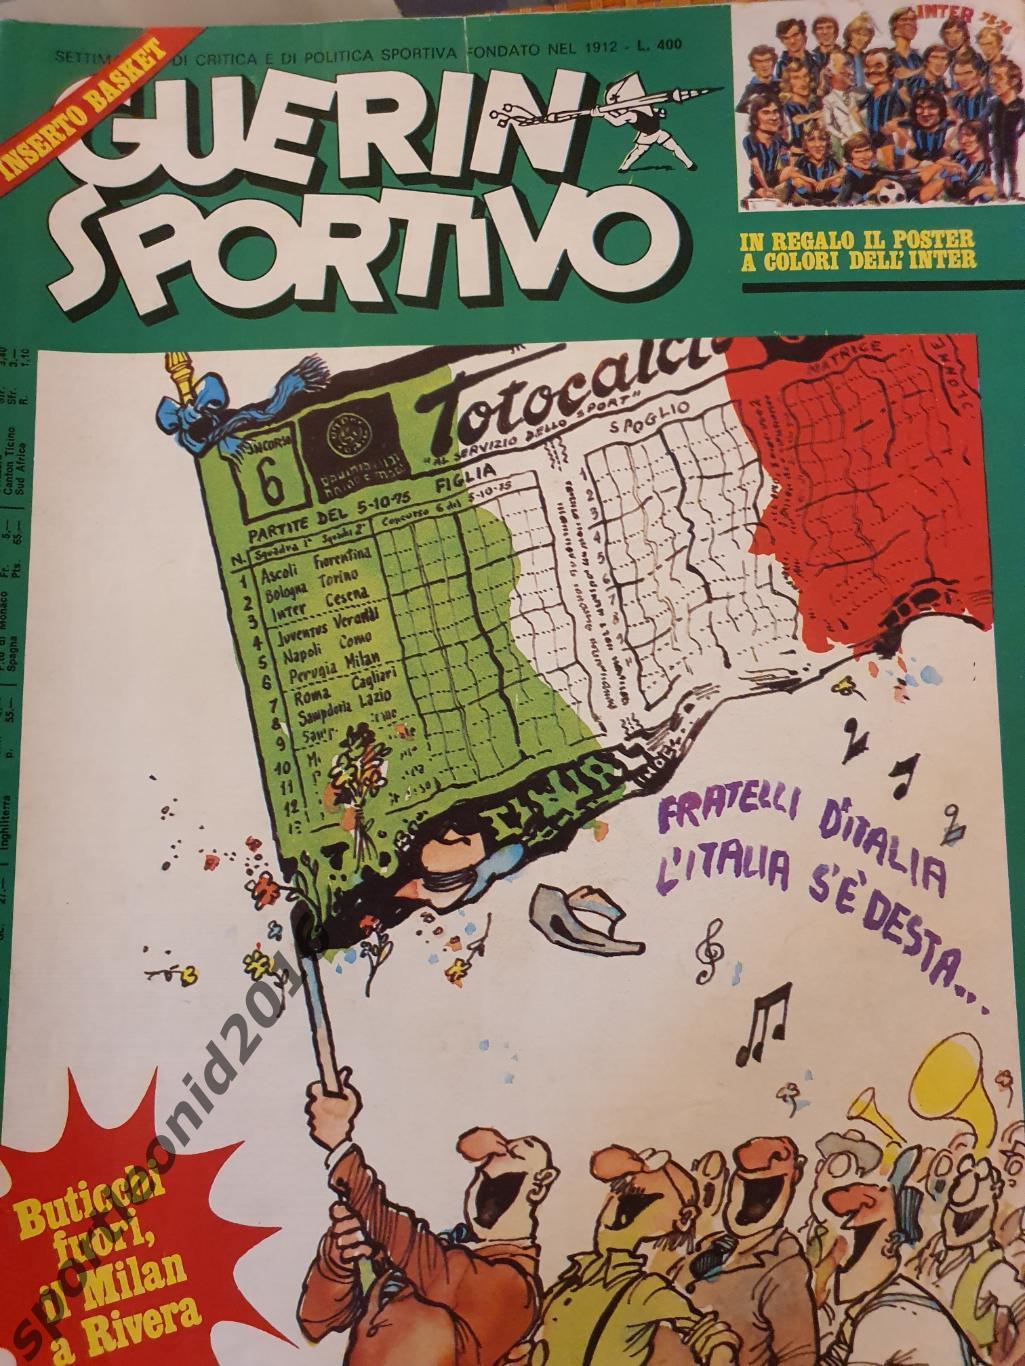 Guerin Sportivo-35/1975 1